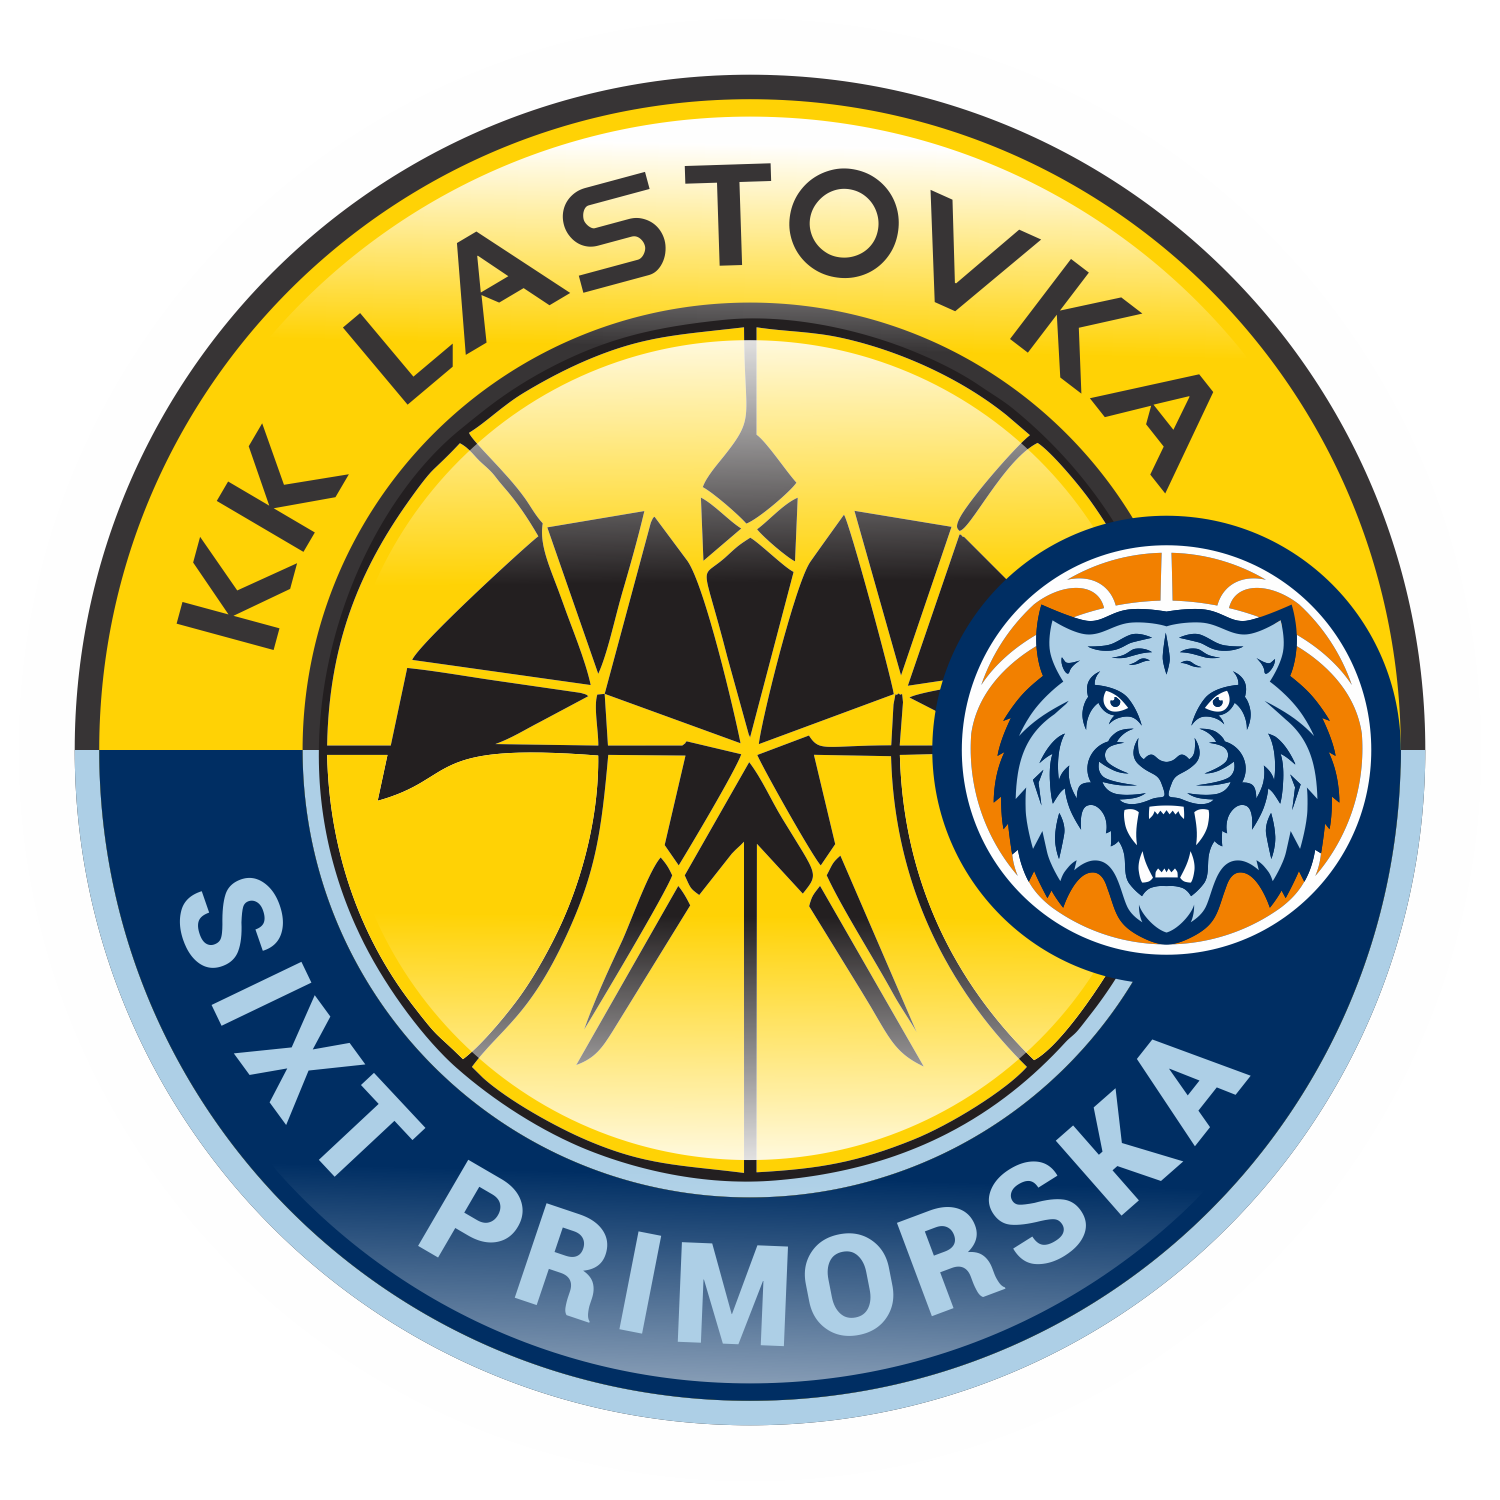 Hibridni logo Lastovka KK Primorska